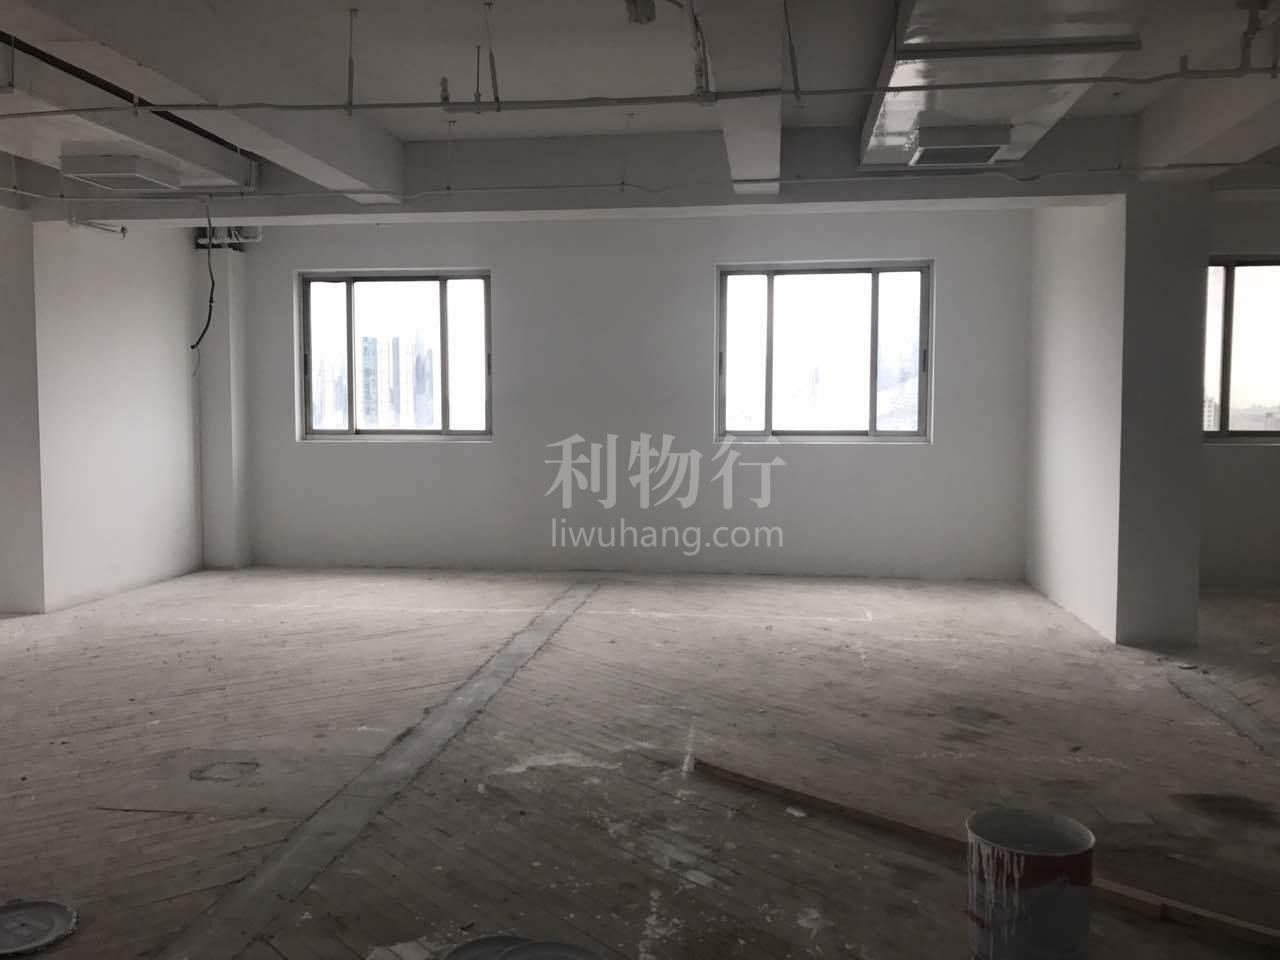 中外运大厦写字楼104m2办公室4.00元/m2/天 中等装修